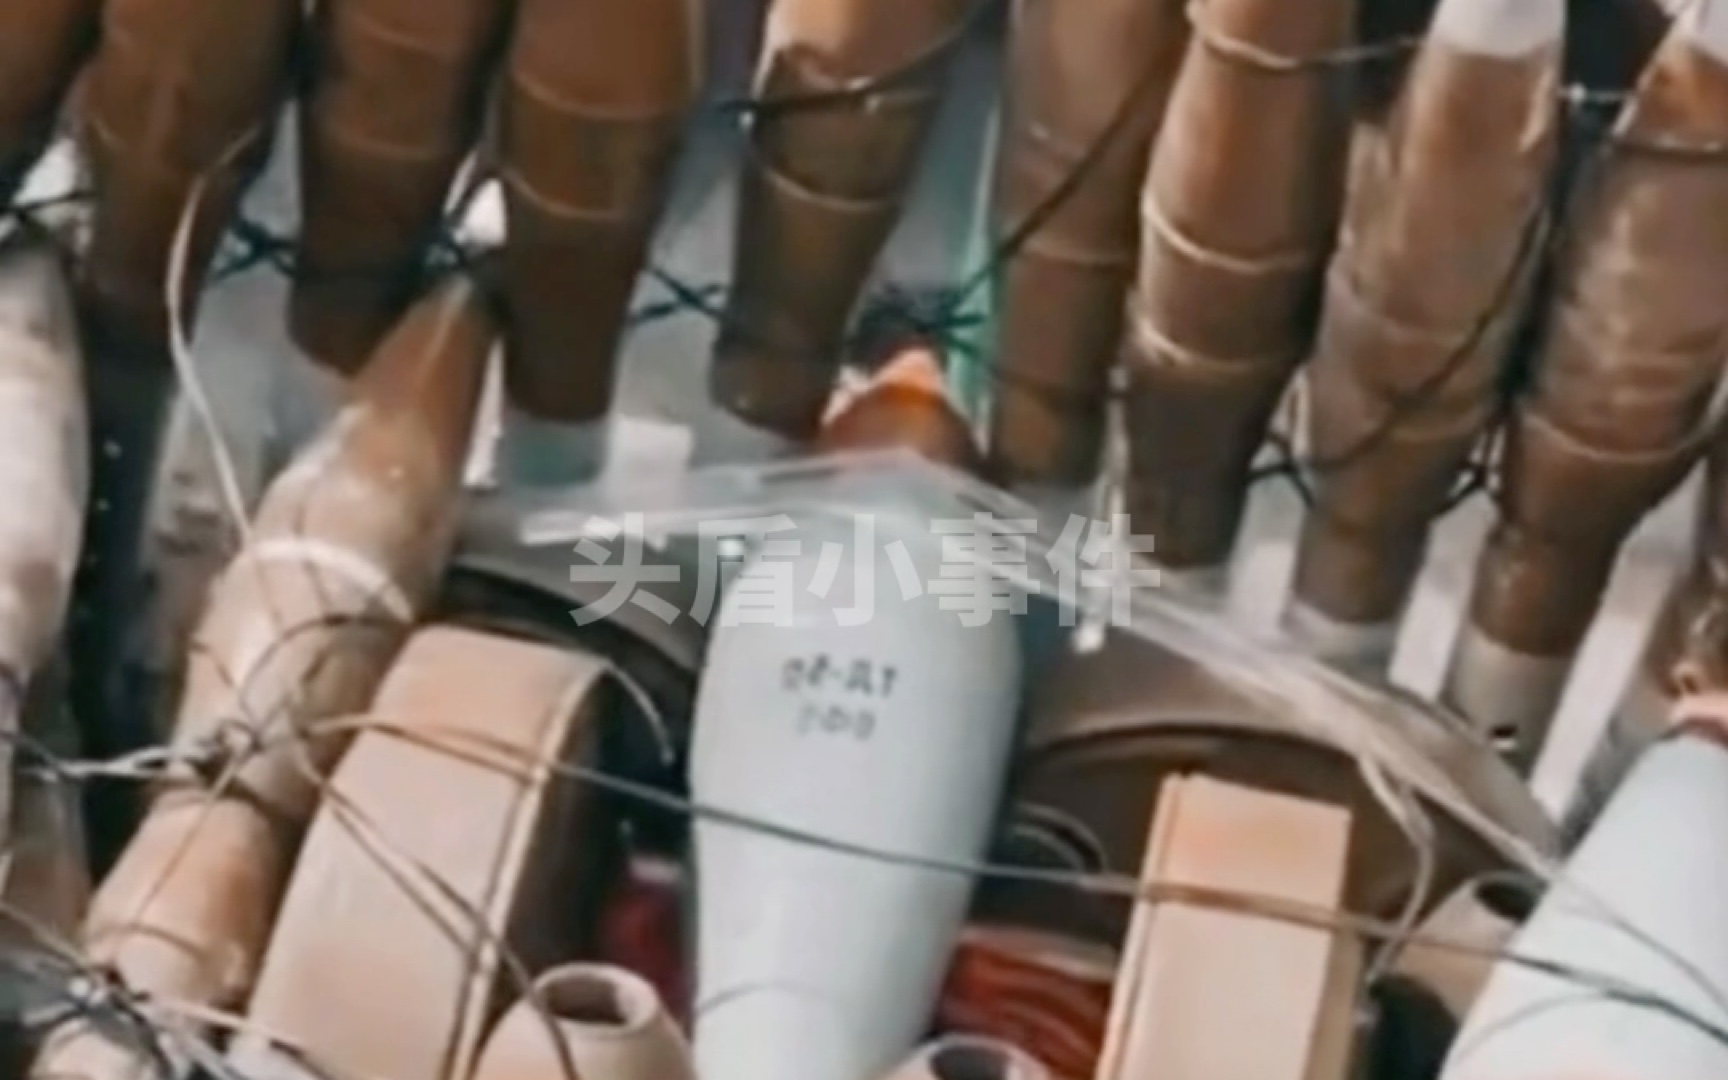 自爆装甲 俄军的“自爆坦克”深深的轰动了乌军 乌军展示了自行研发的自爆车内部弹药结构并实操了一发